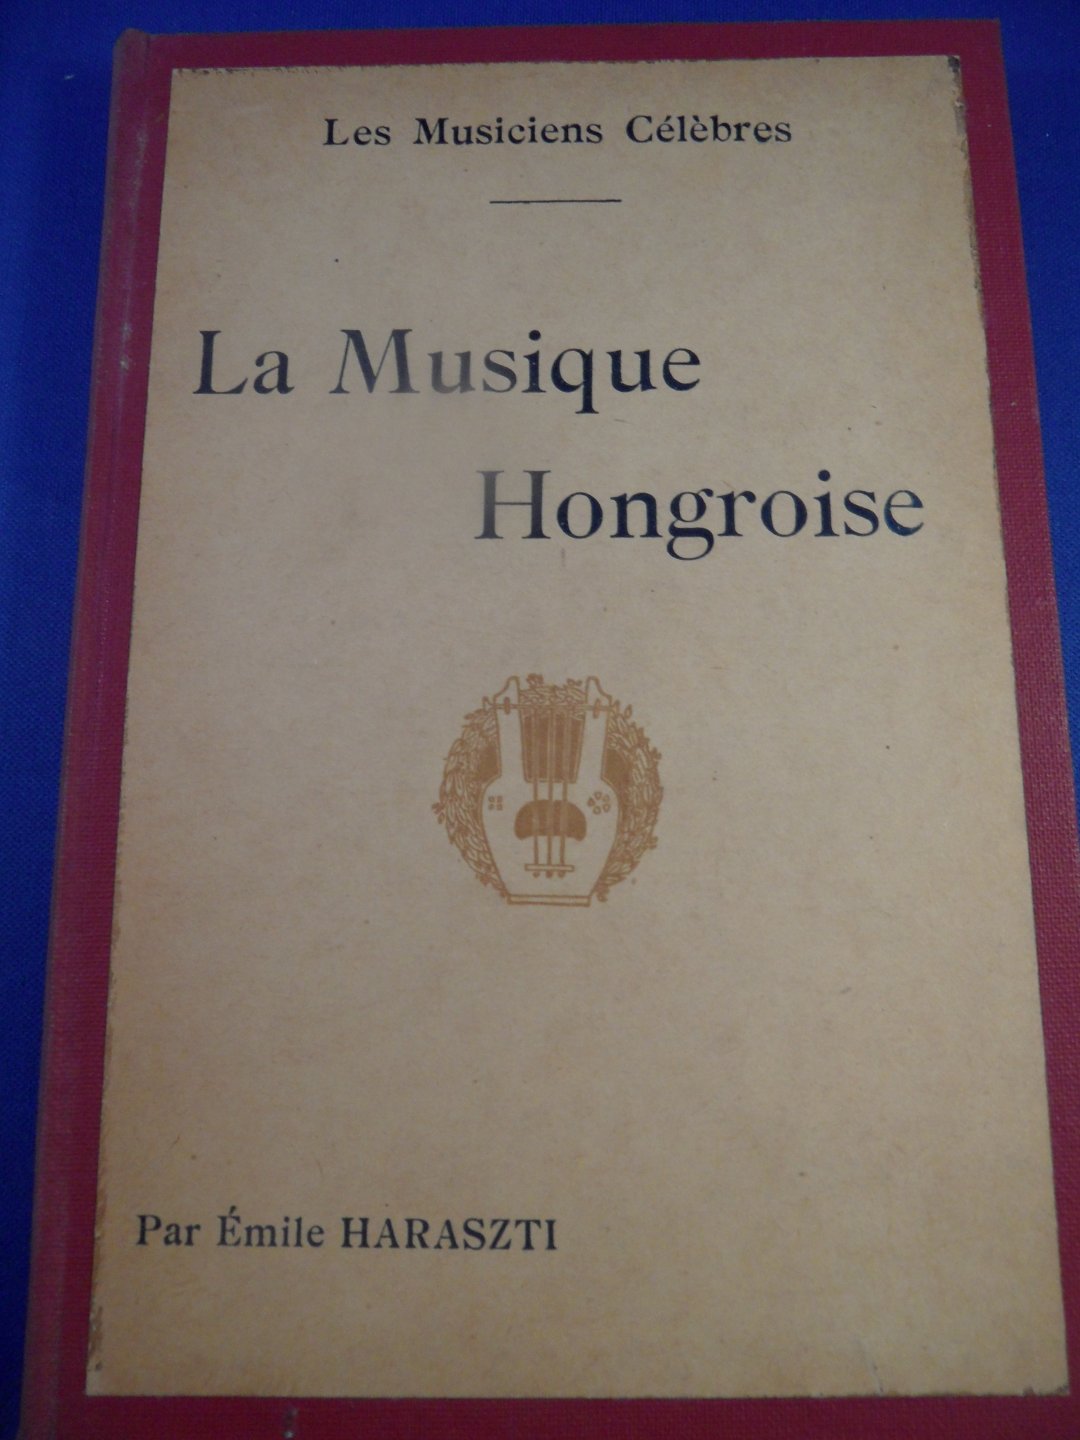 Haraszti, emile - La Musique Hongroise